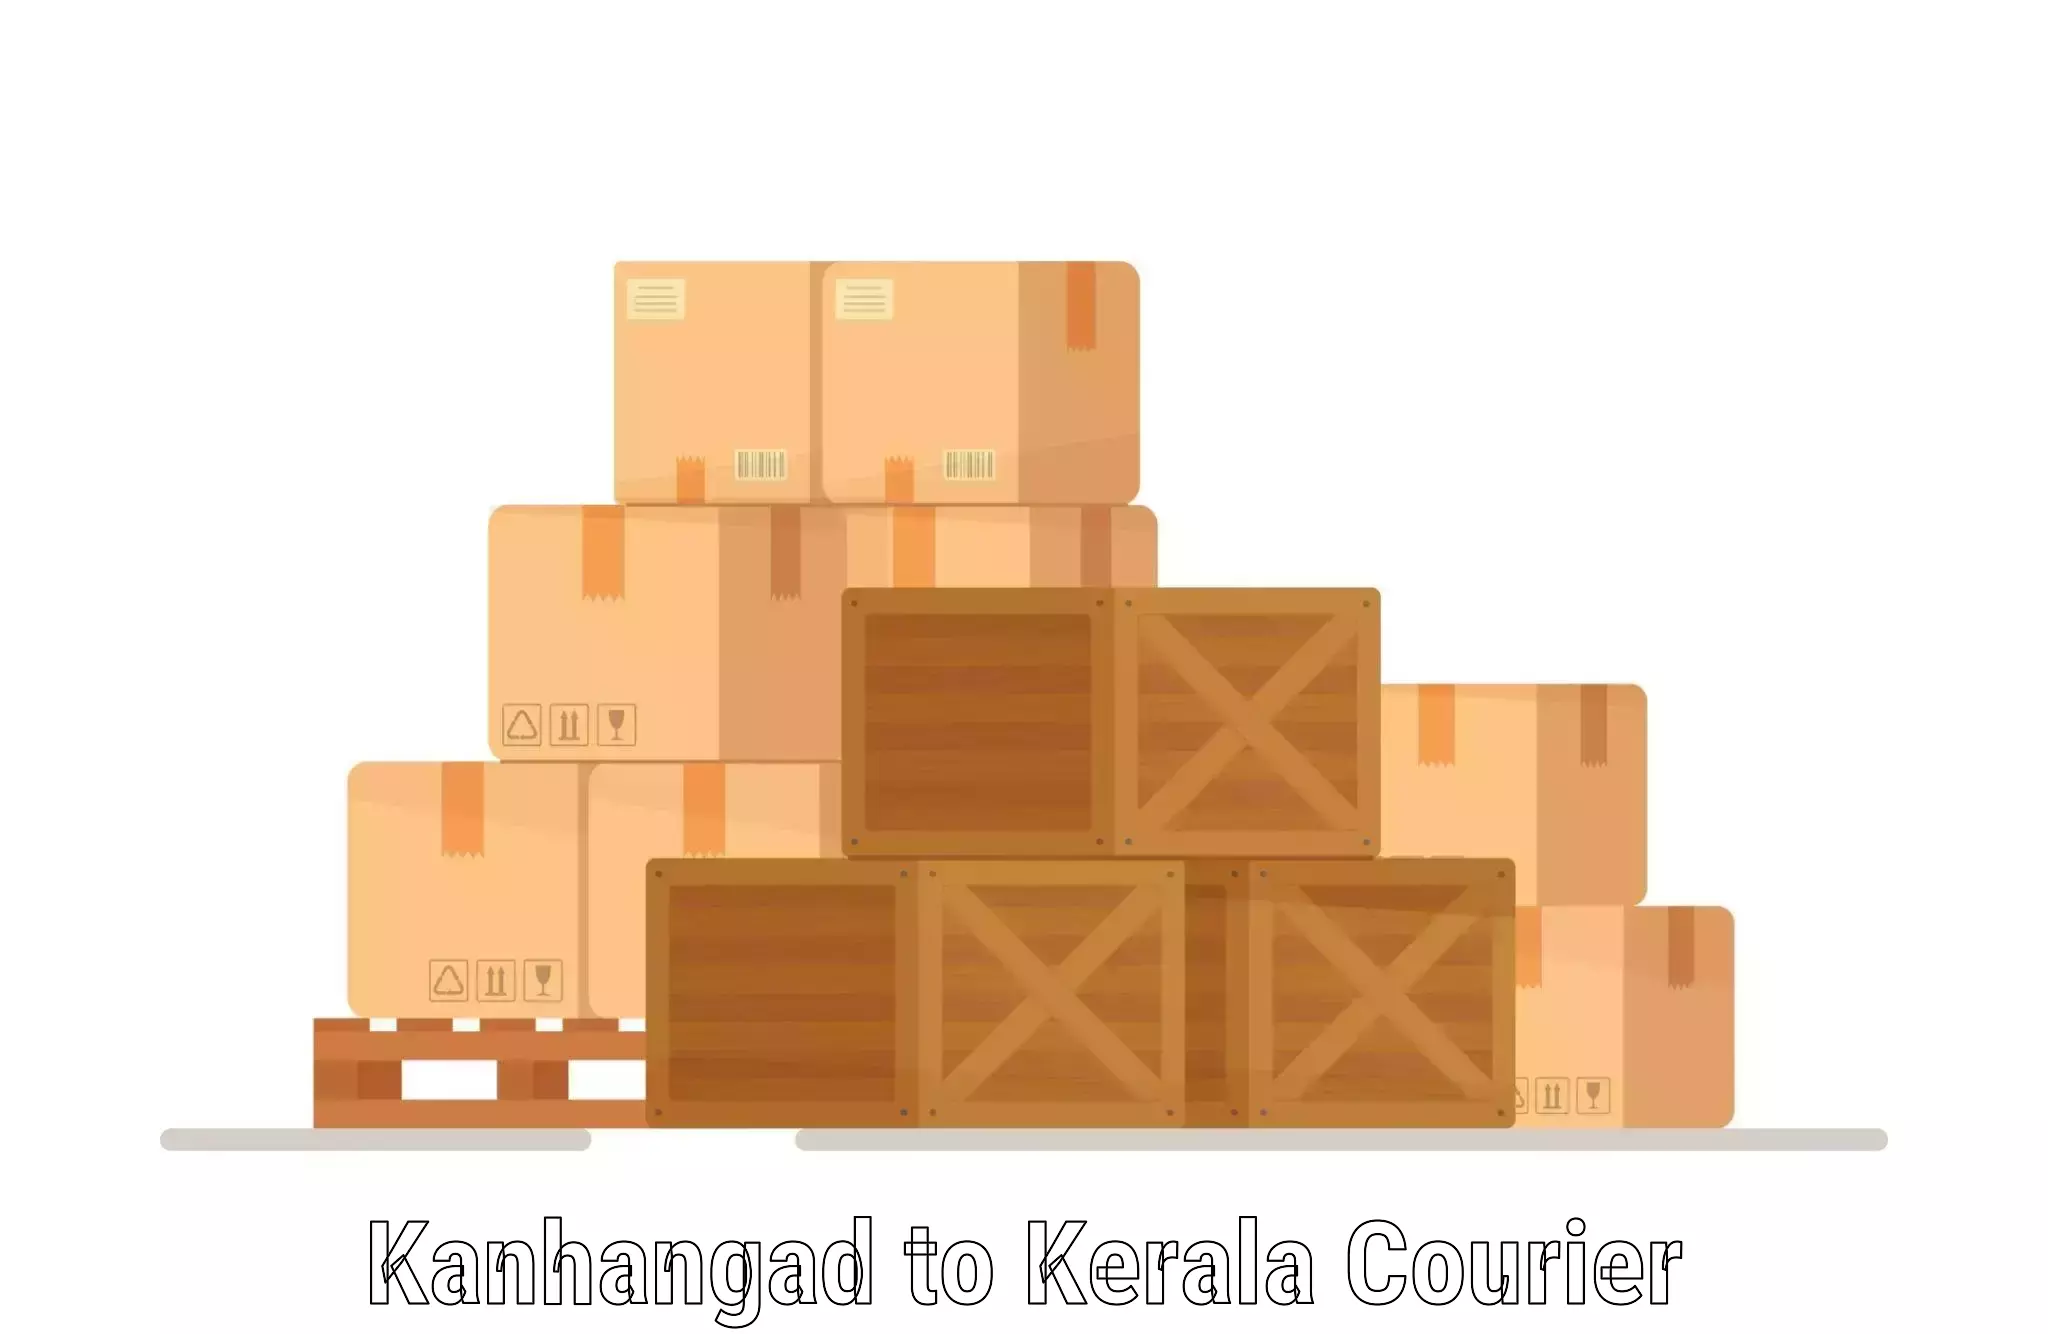 Door-to-door freight service Kanhangad to Parippally